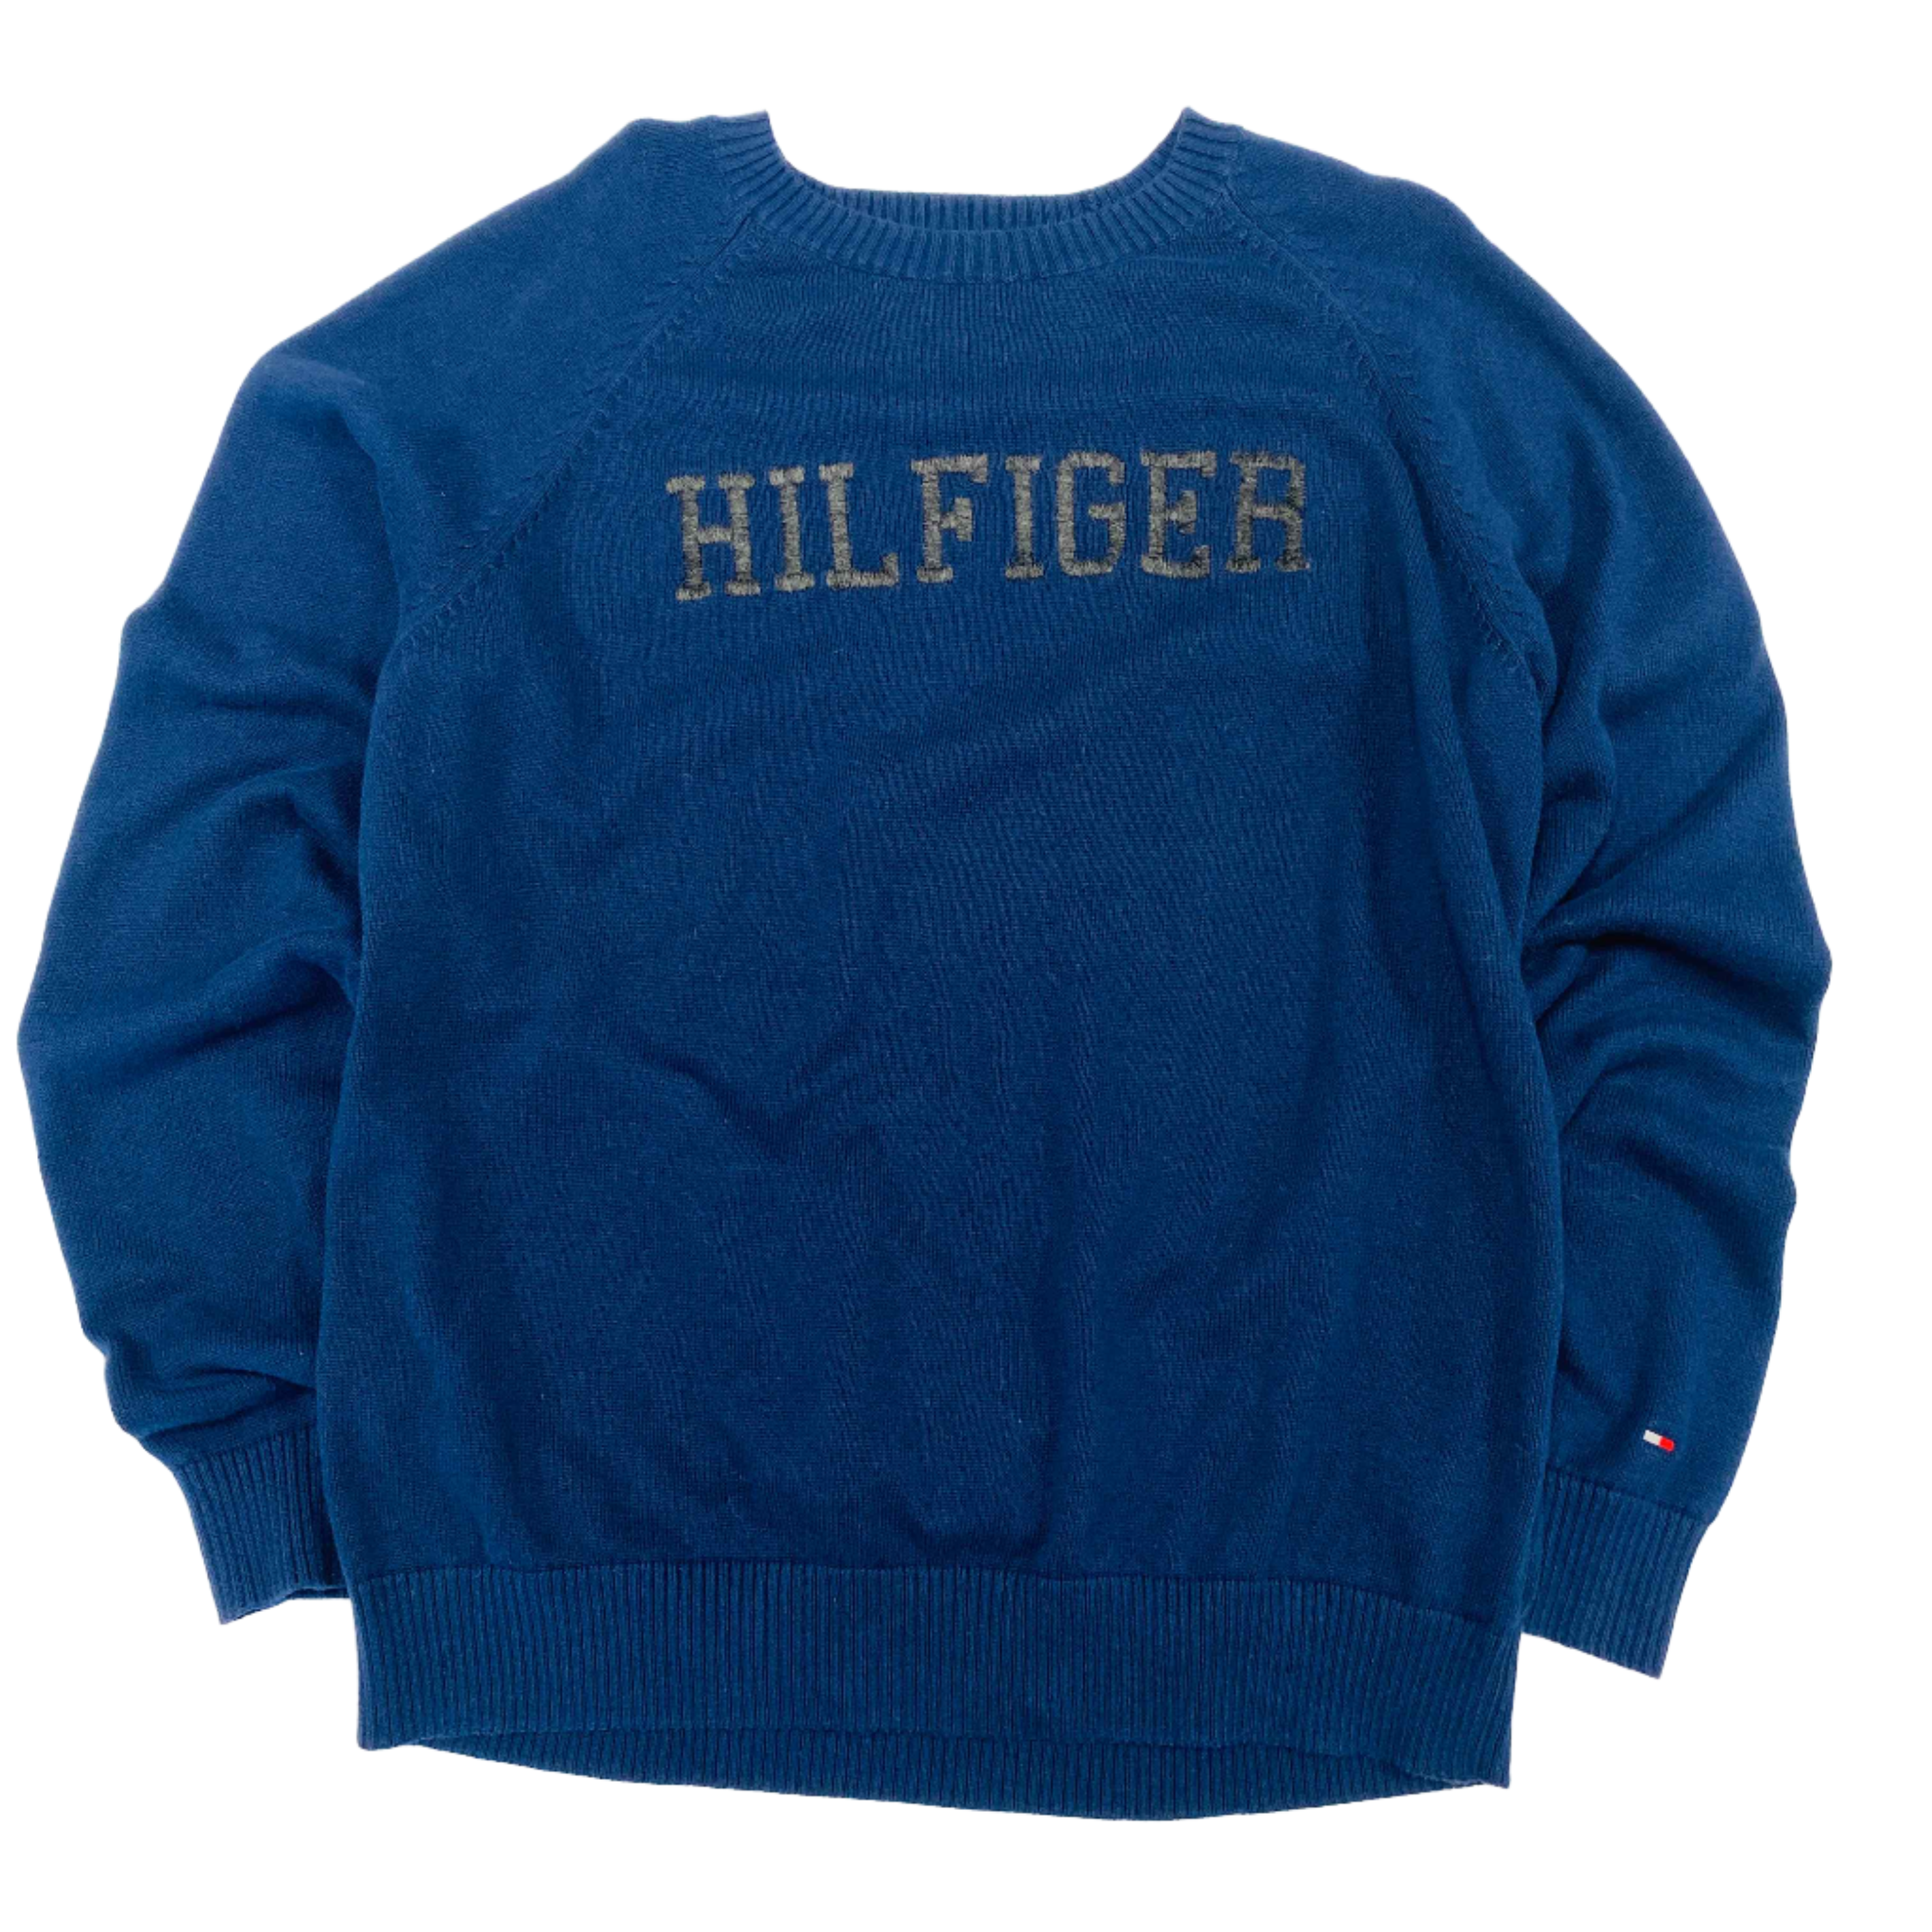 Tommy Hilfiger Knitted Jumper - Large